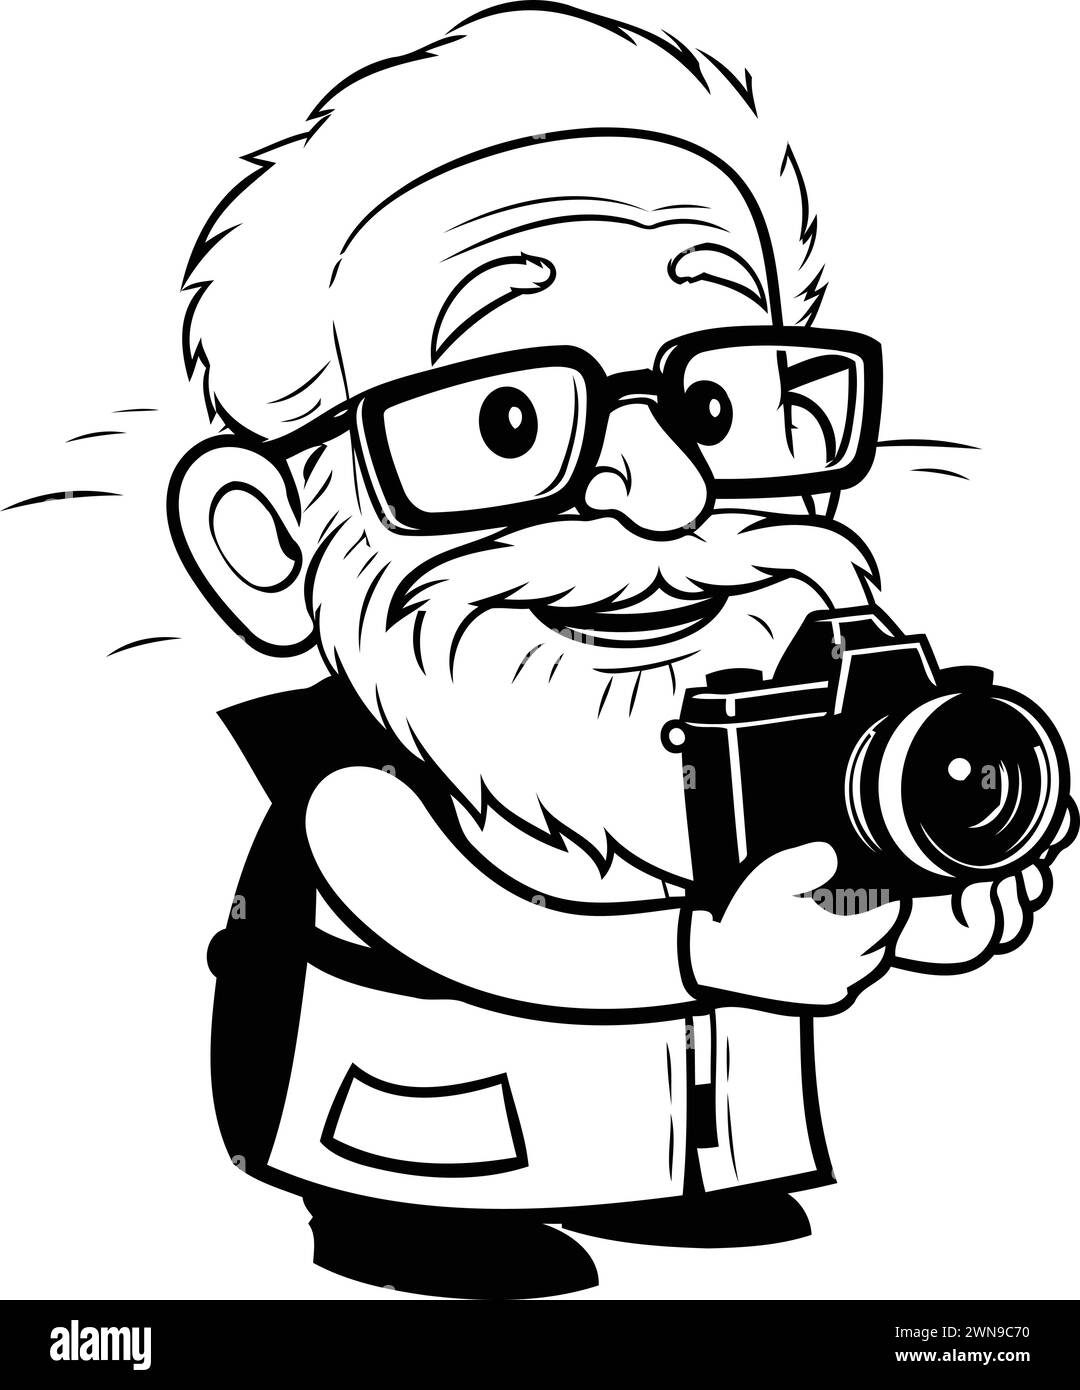 Grand-père avec un appareil photo - illustration de dessin animé noir et blanc. Vecteur Illustration de Vecteur